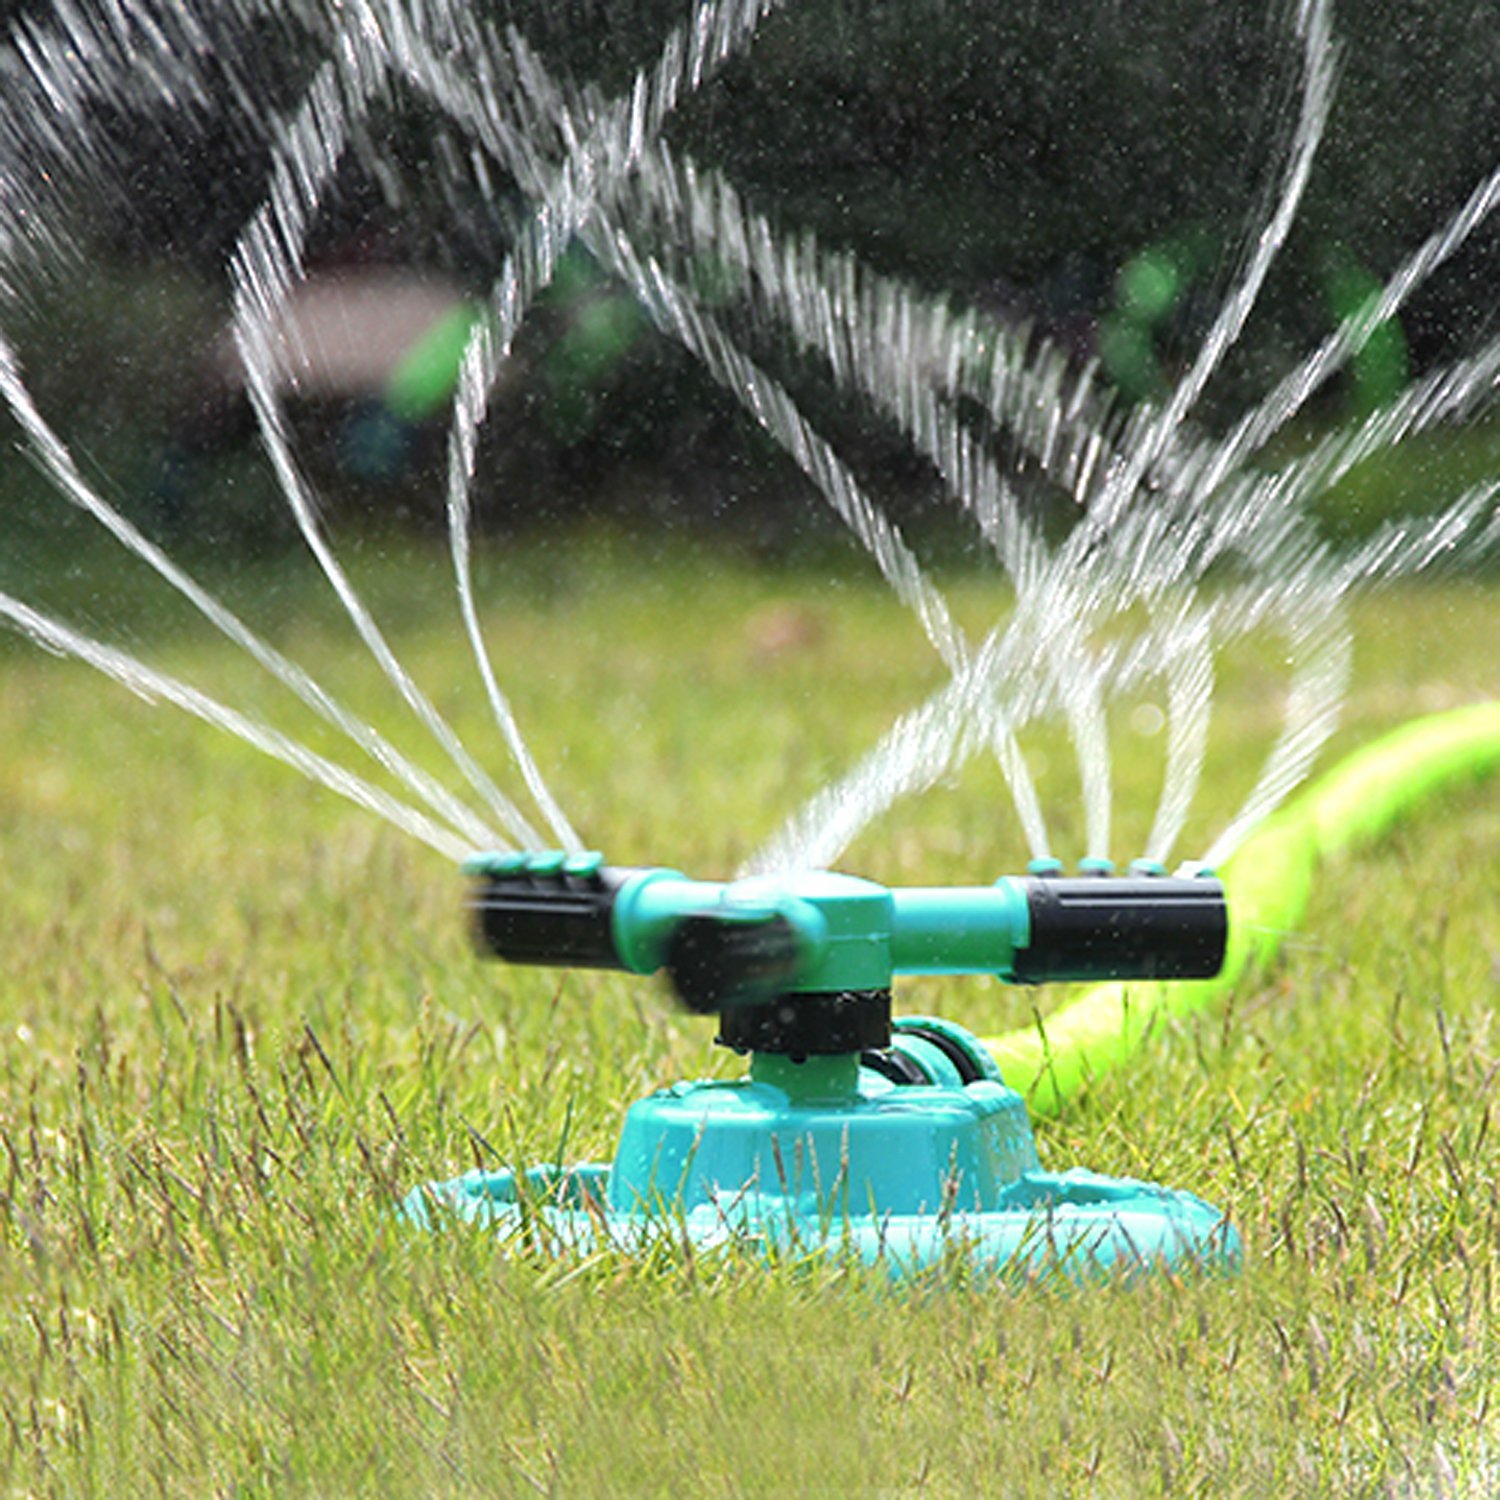 Amazon.com : Lawn Sprinkler, UNIFUN Garden Sprinklers Water Entire ...